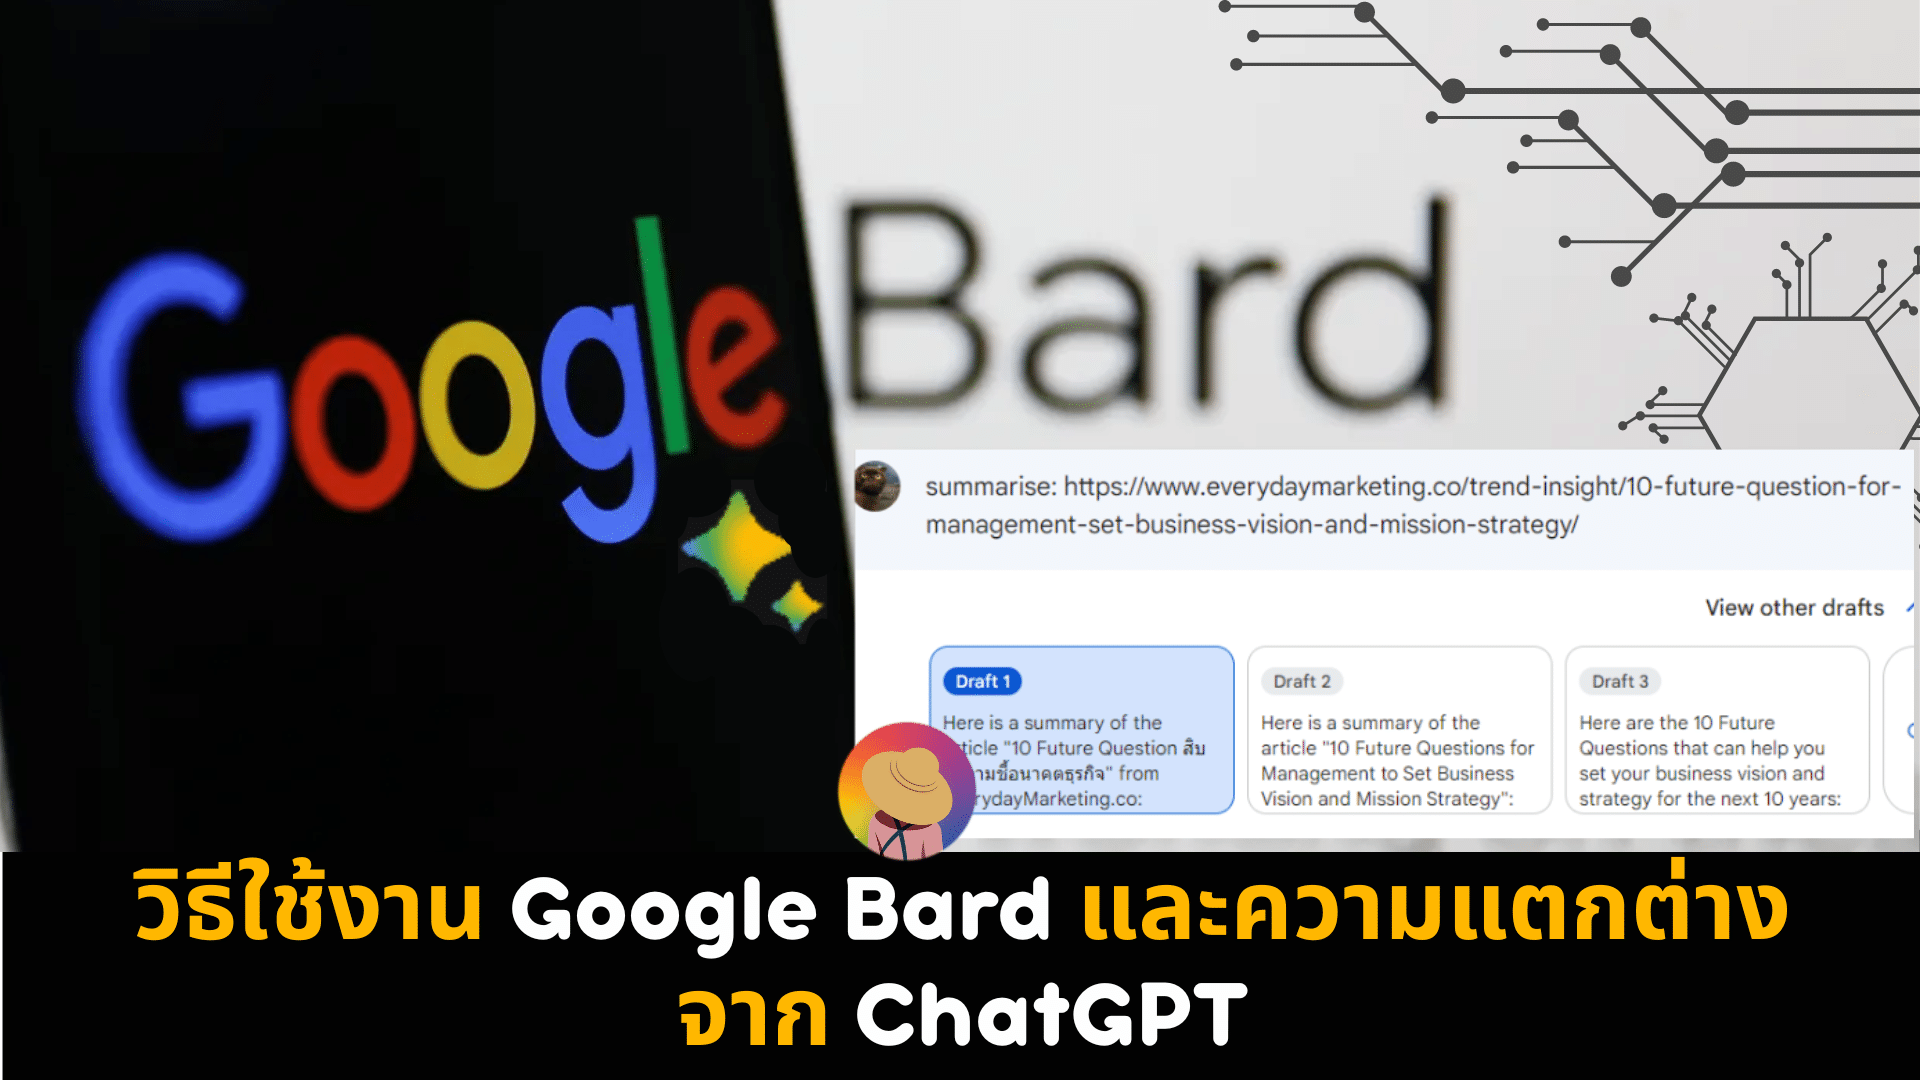 วิธีใช้งาน Google Bard และความแตกต่างจาก ChatGPT